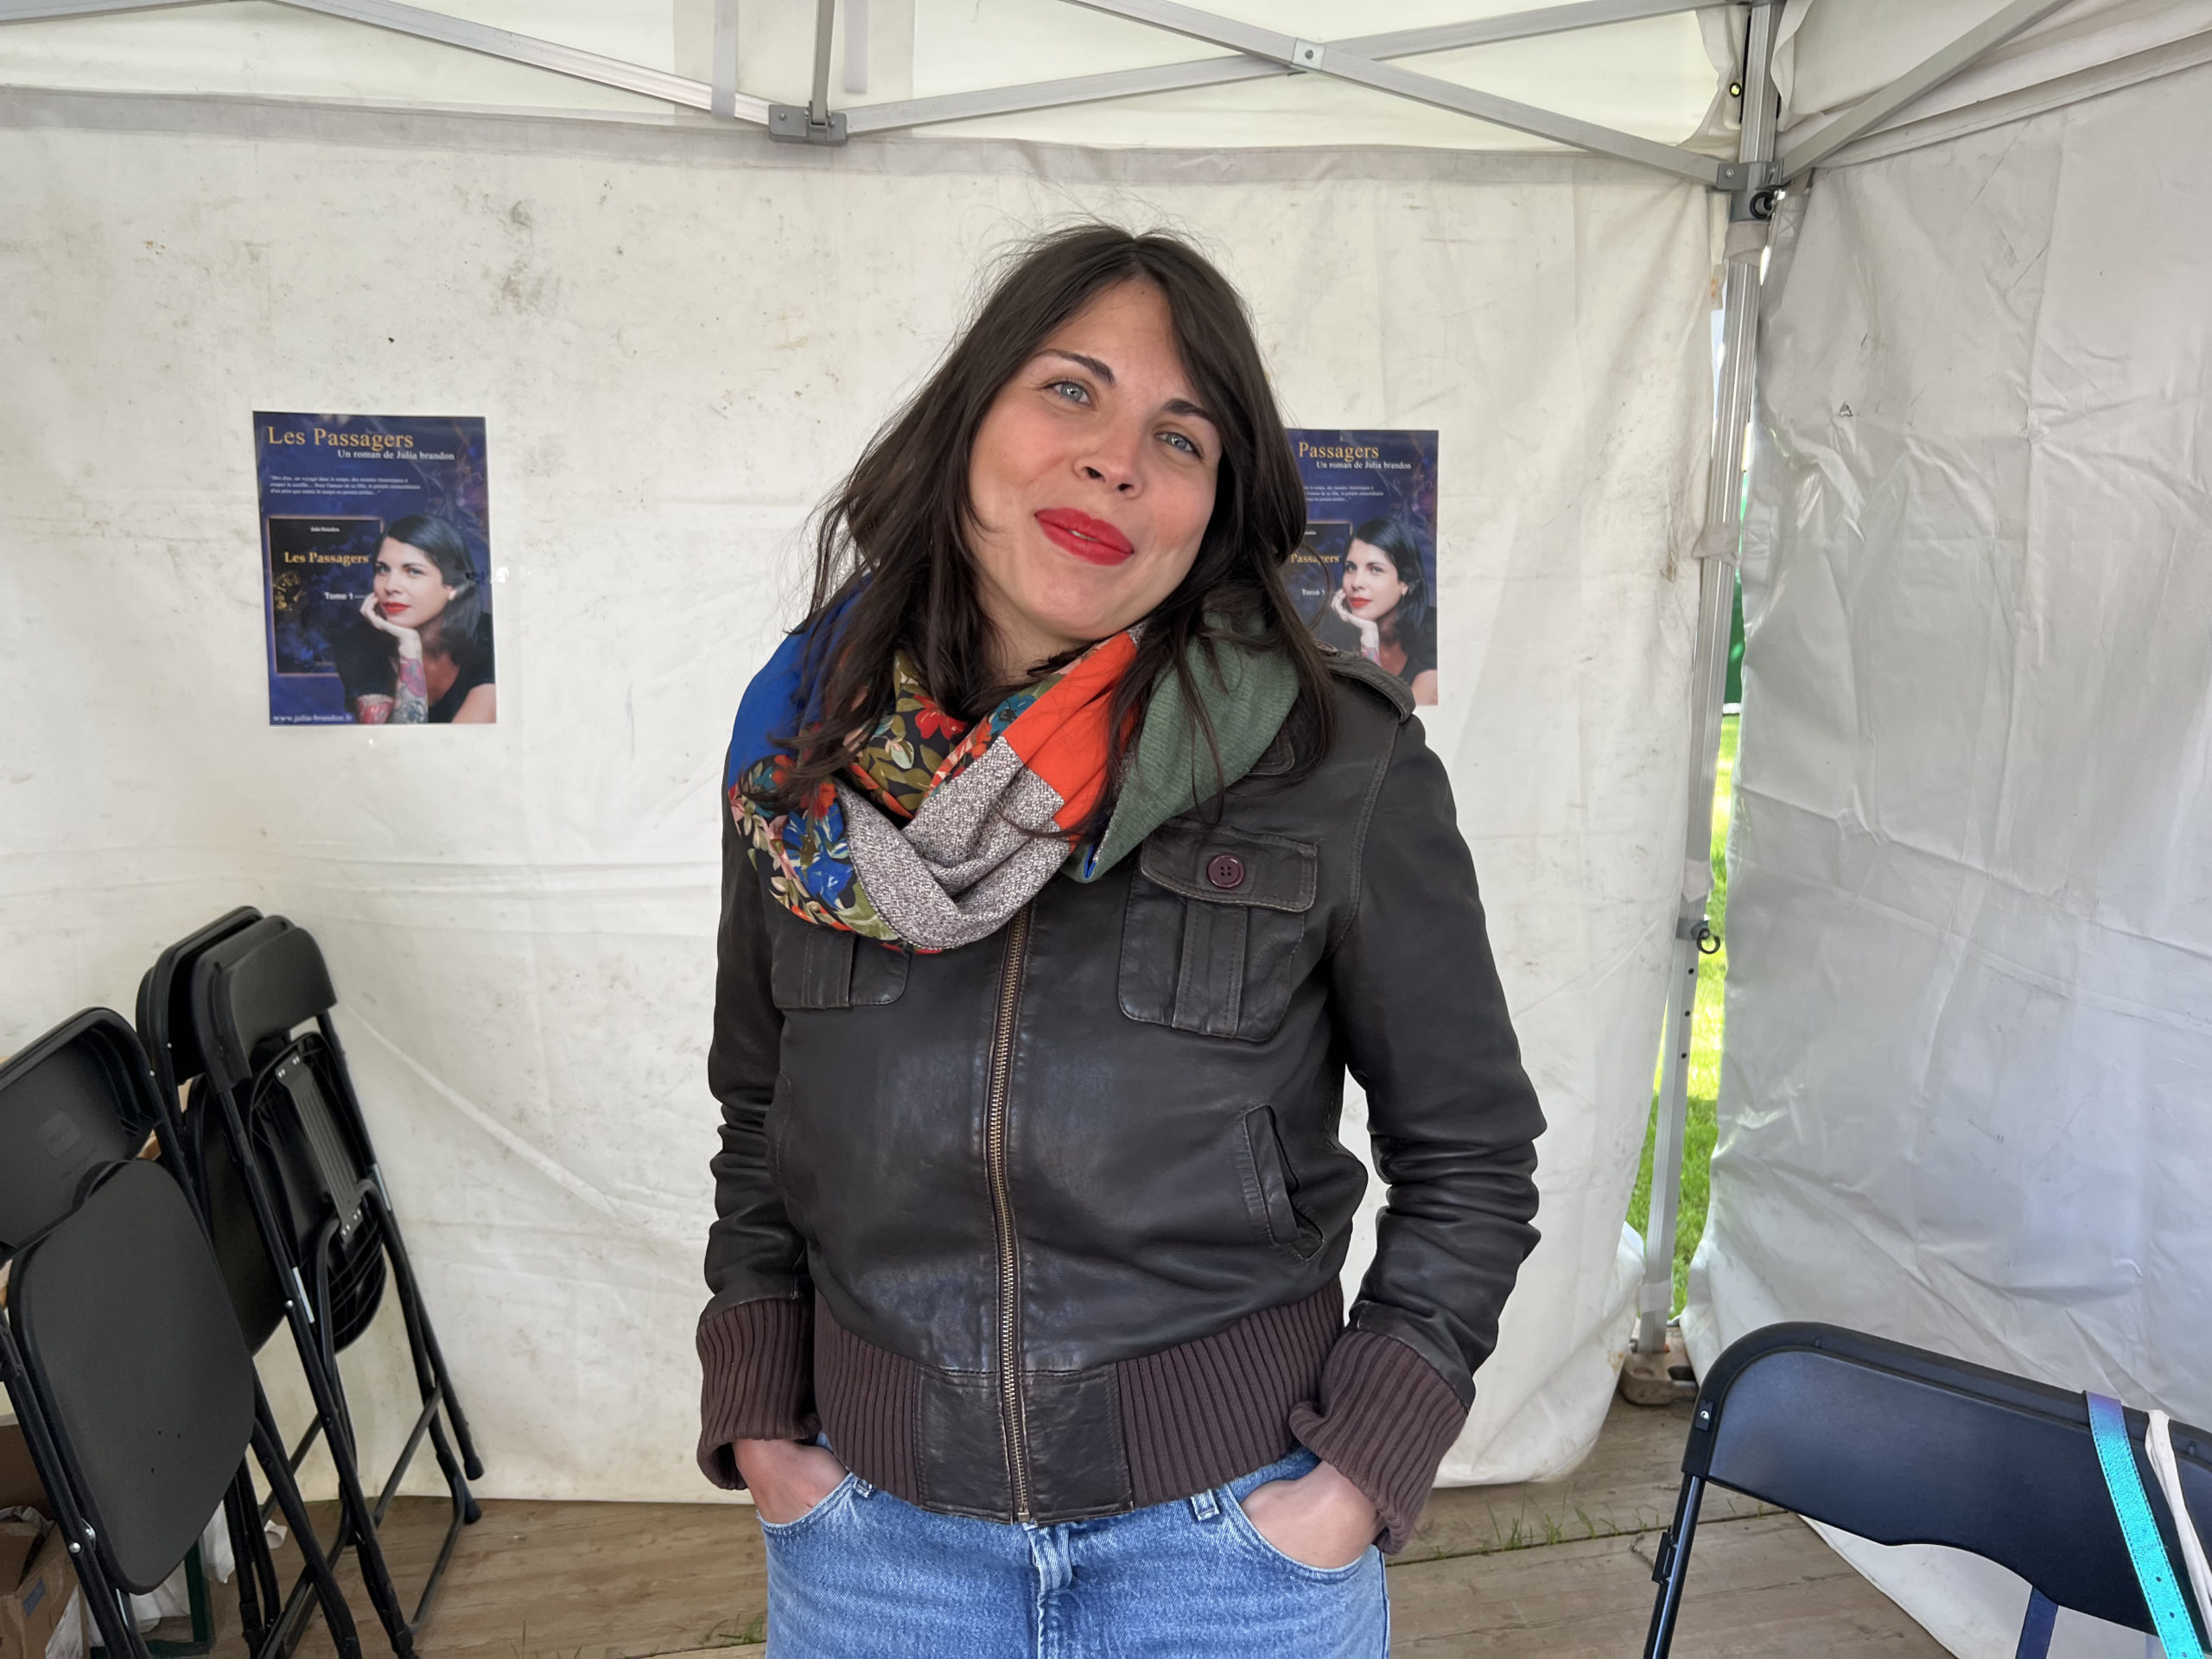 Julia Brandon, l'auteure du roman "Les Passagers", au festival Les Imaginales d'Épinal.